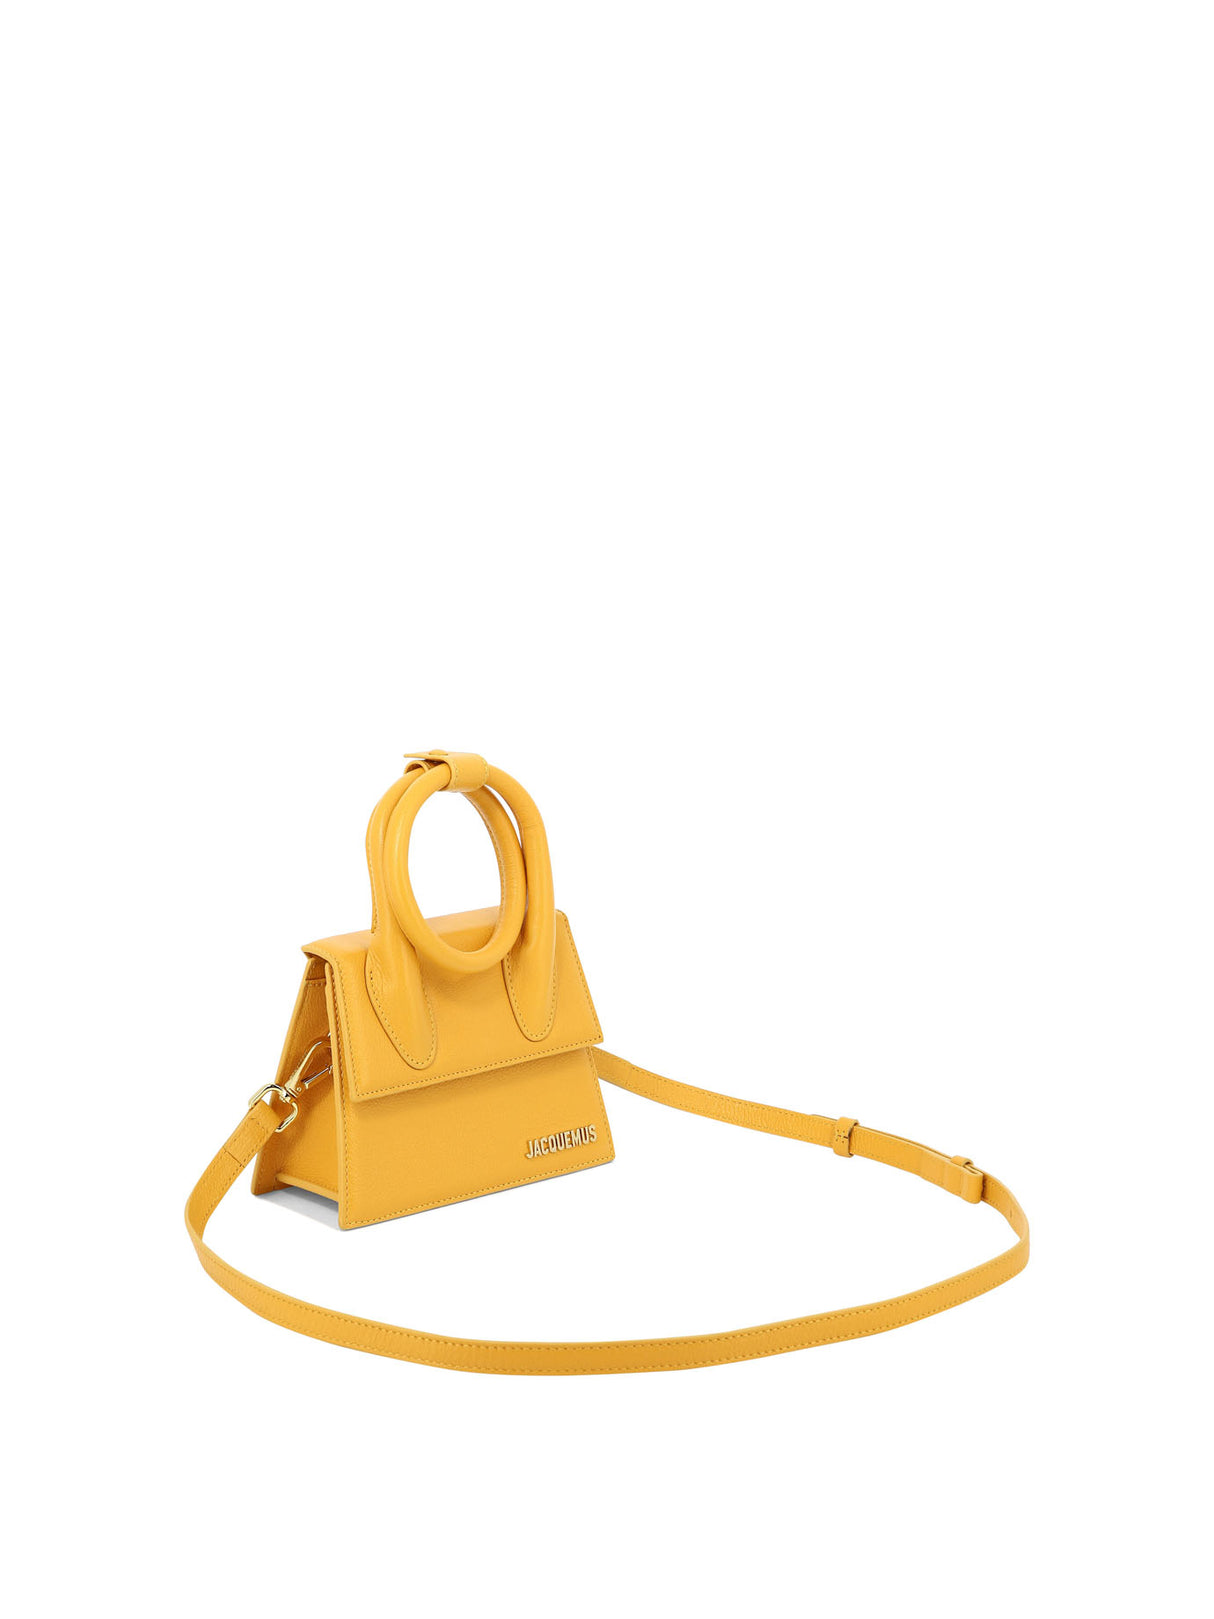 Túi xách dành cho phụ nữ màu da cam với quai đeo top-handle